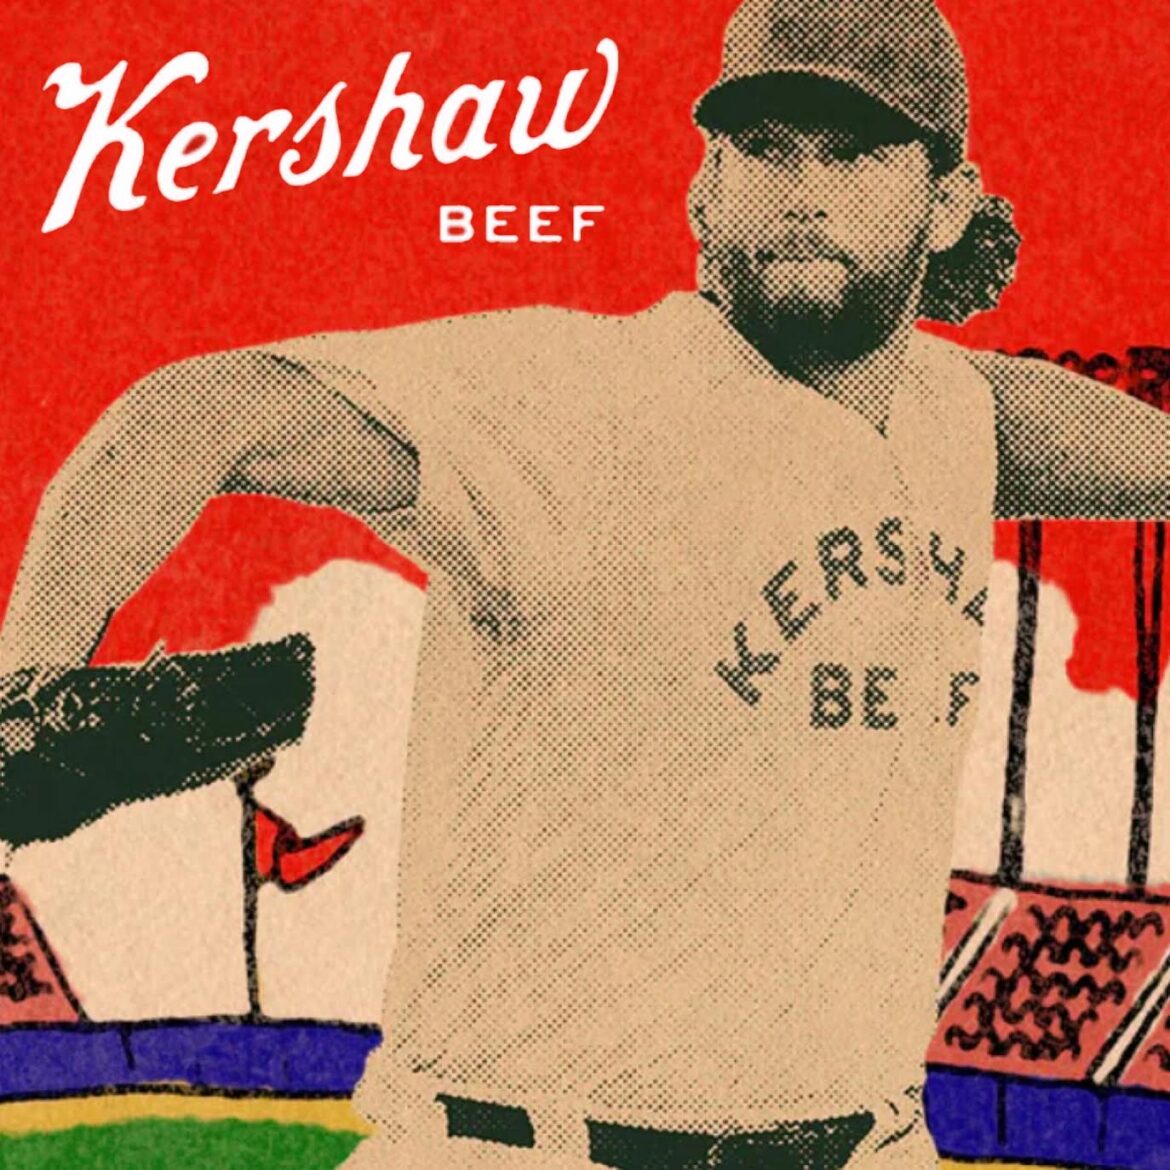 Kershaw Meat